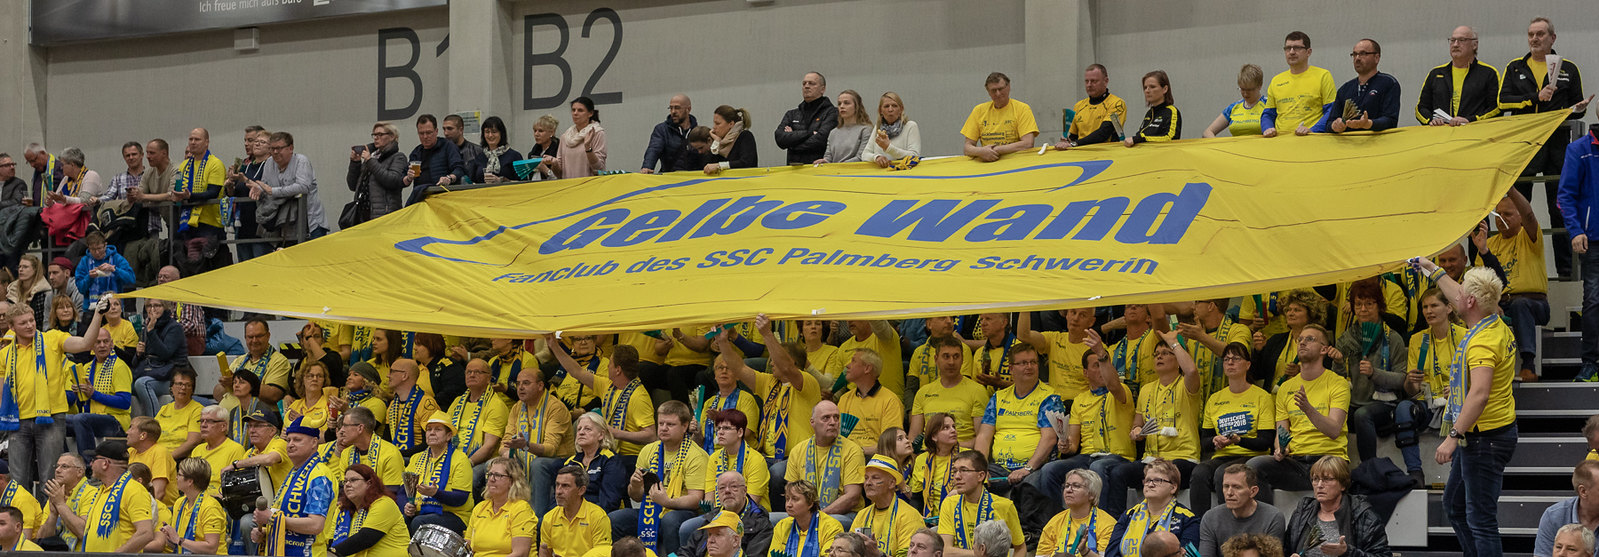 Schwerin: Volleyballfans schauen langsam nach vorn